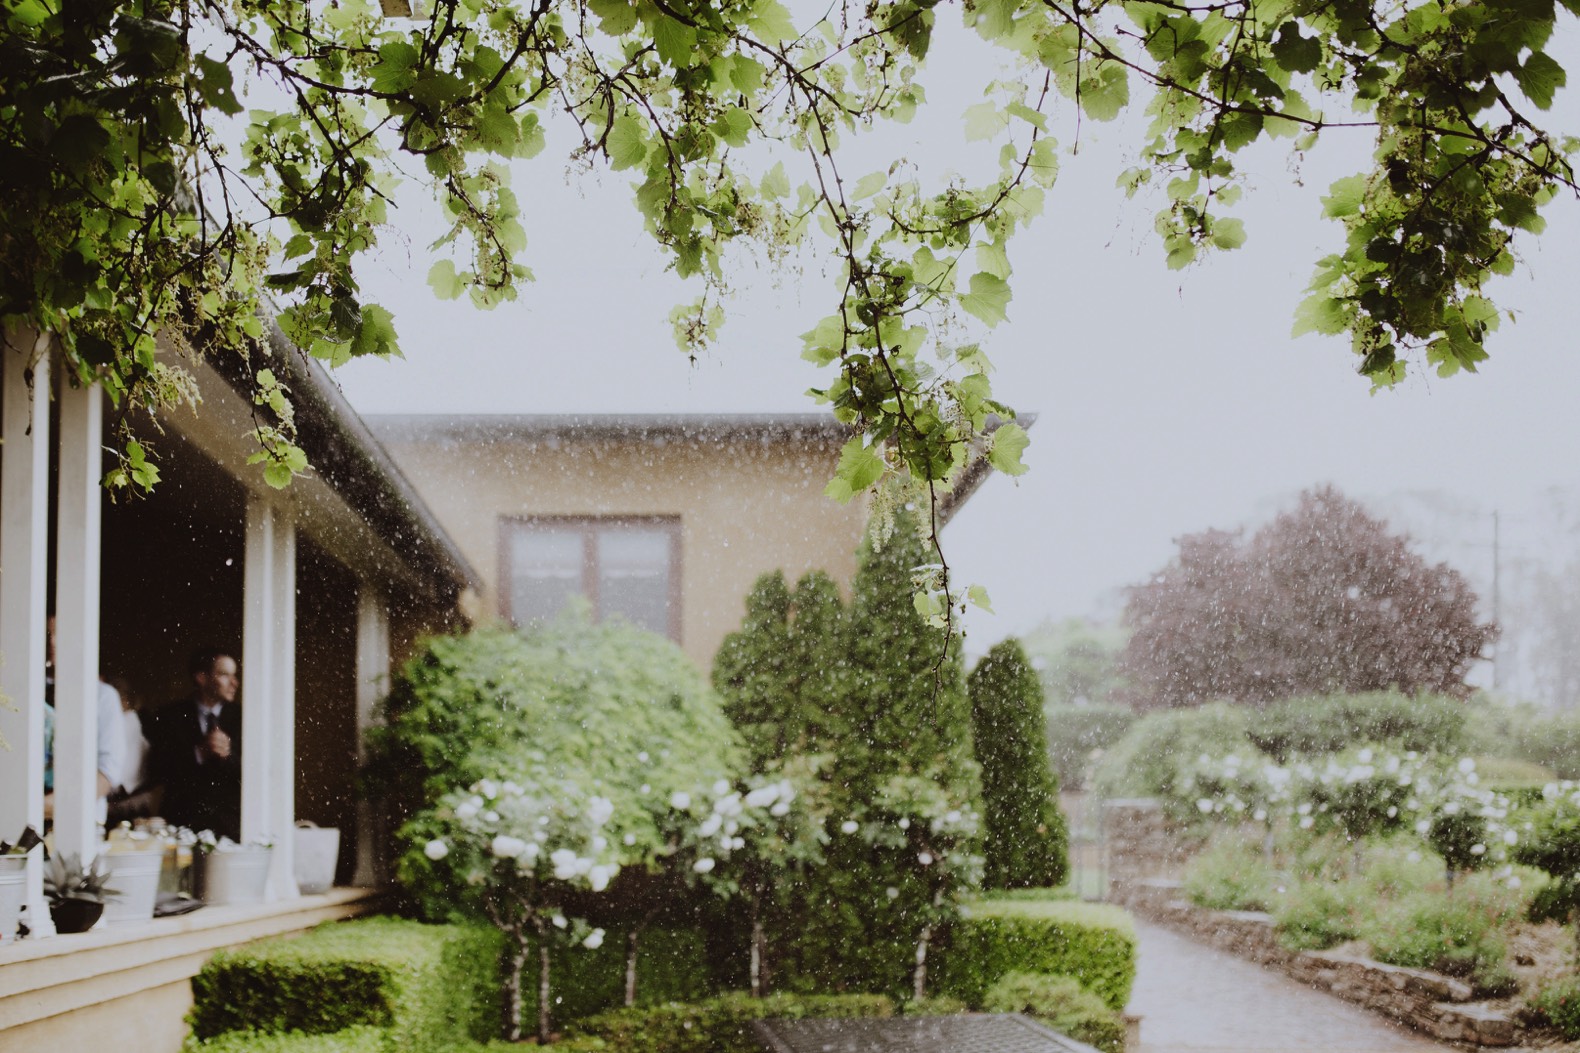 photo of rain outside during wedding reception thornbury lodge stanthorpe